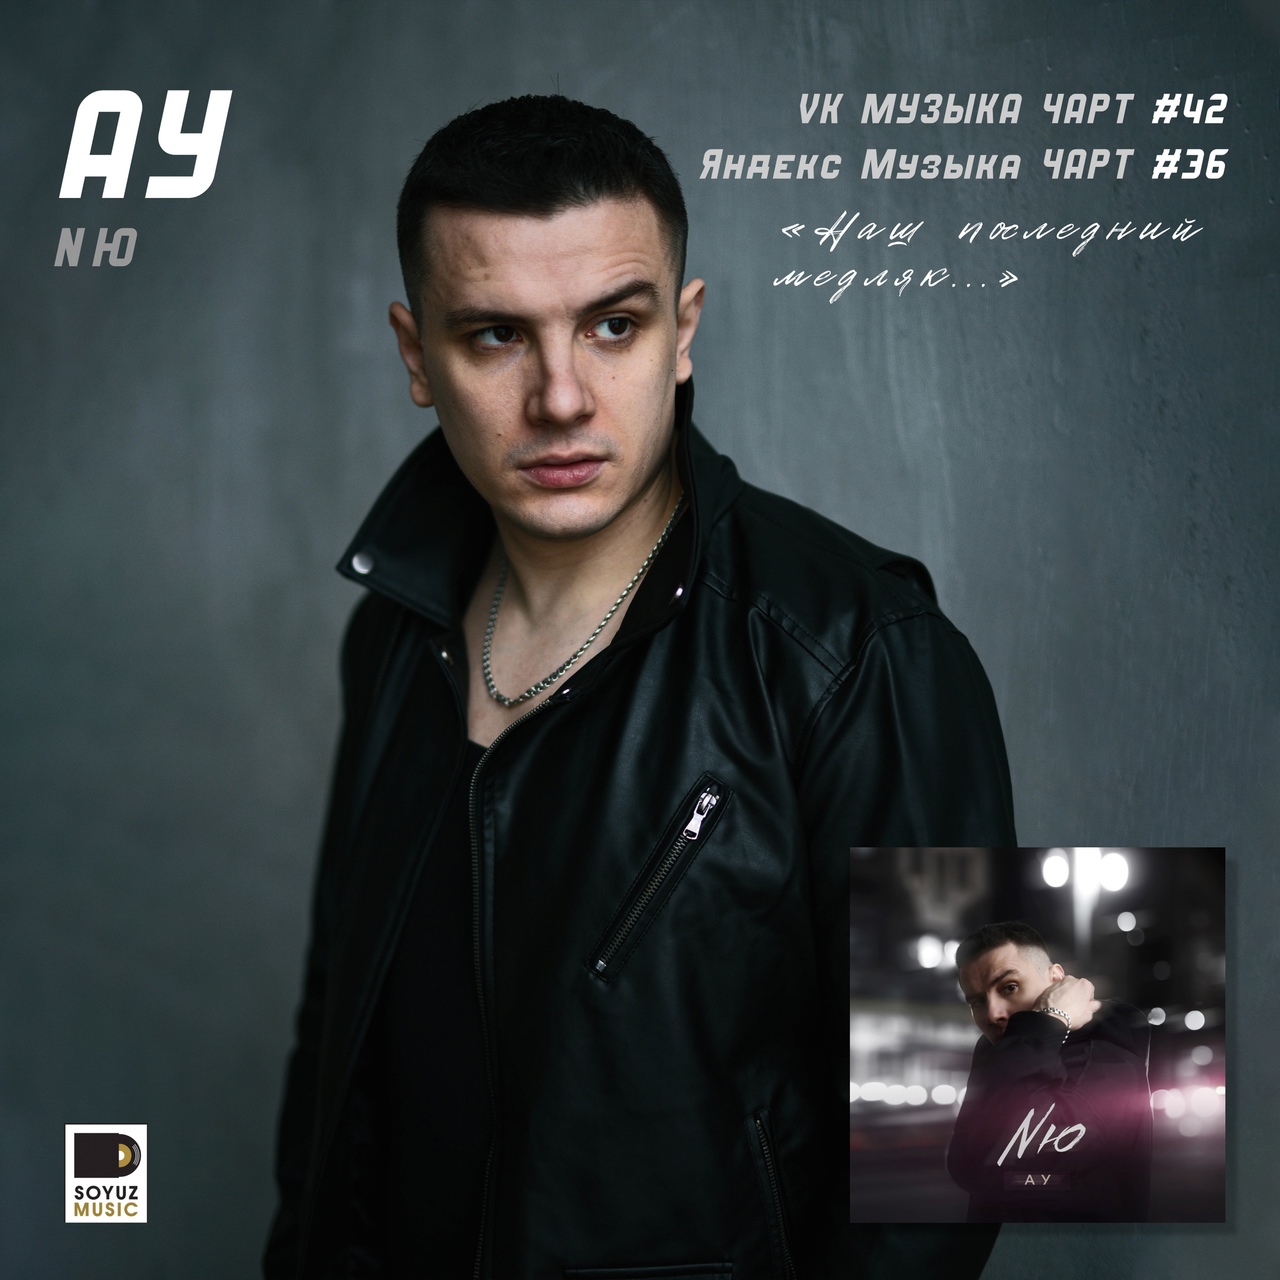 NЮ стартует в чарте VK Музыки в топ-50 чарта главных хитов недели. Новый сингл Ау уже на 42 строке!